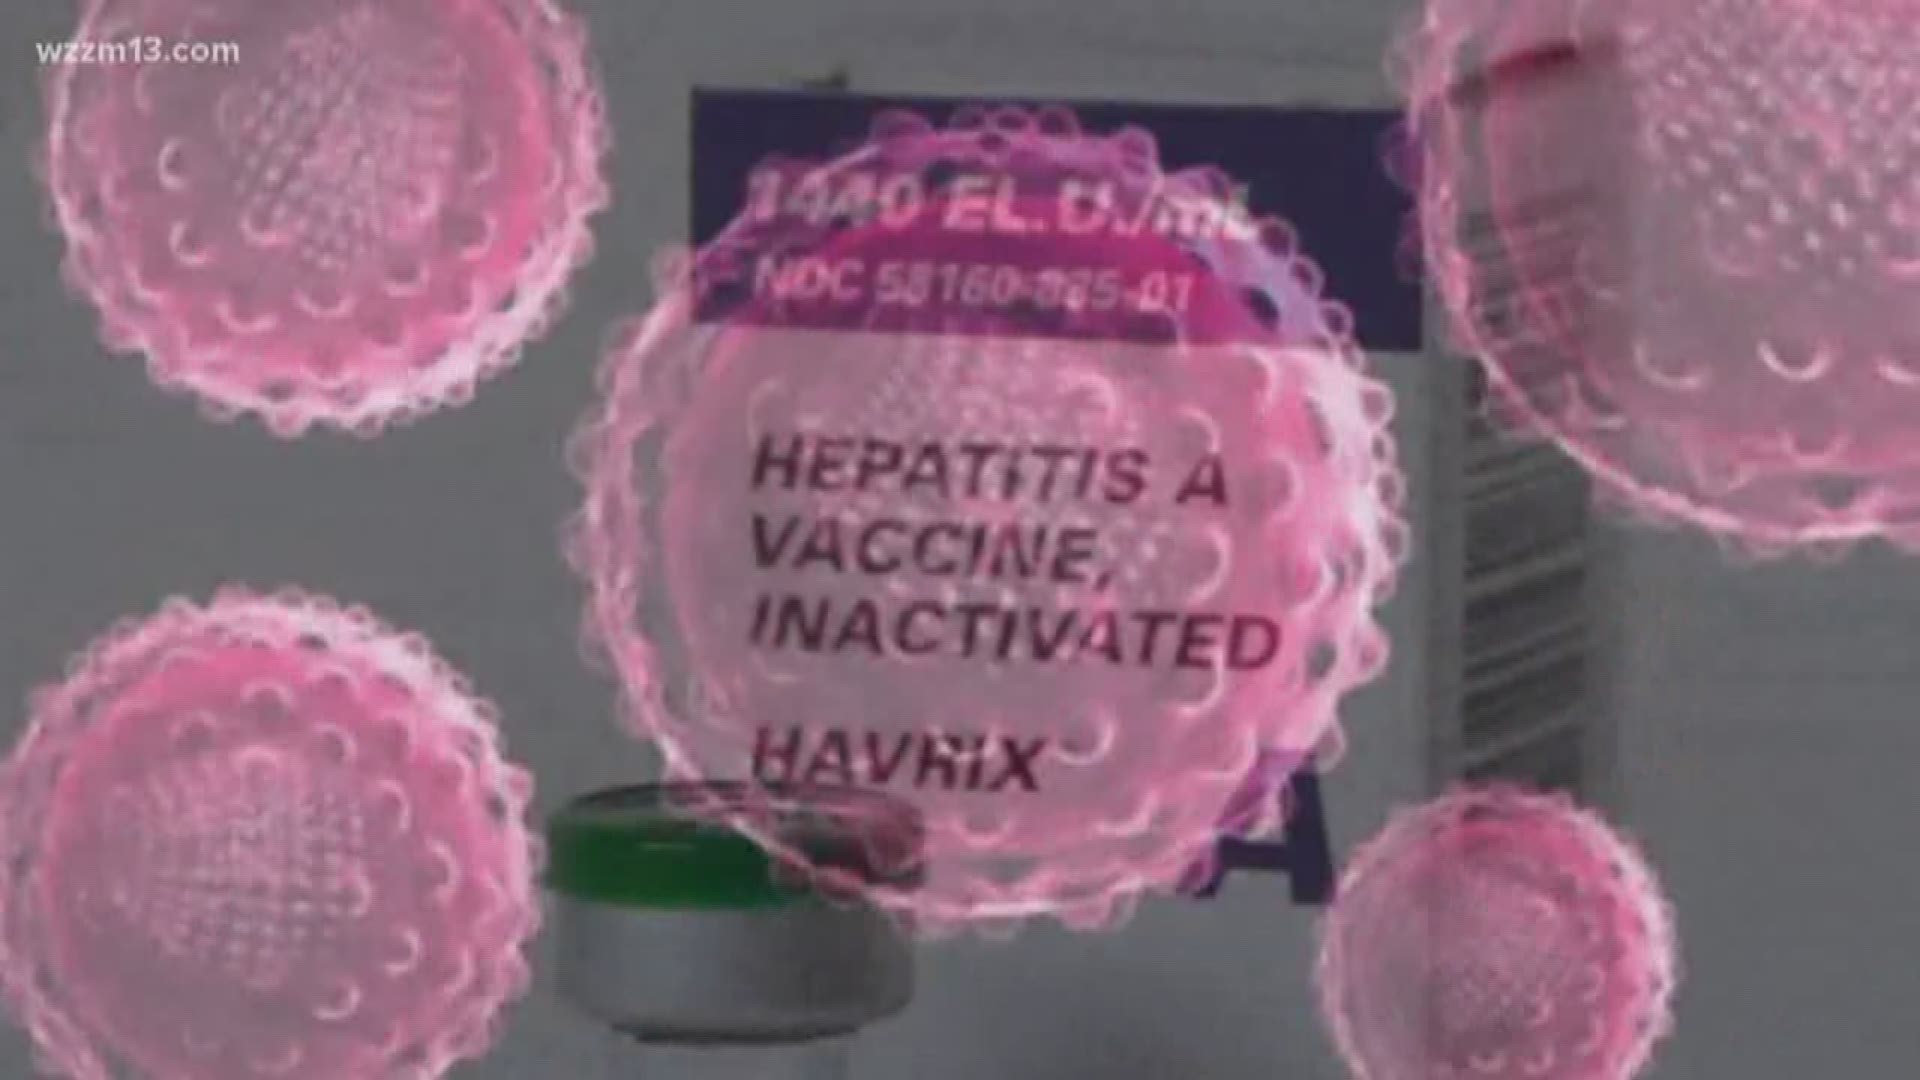 Kent County now part of Hepatitis outbreak